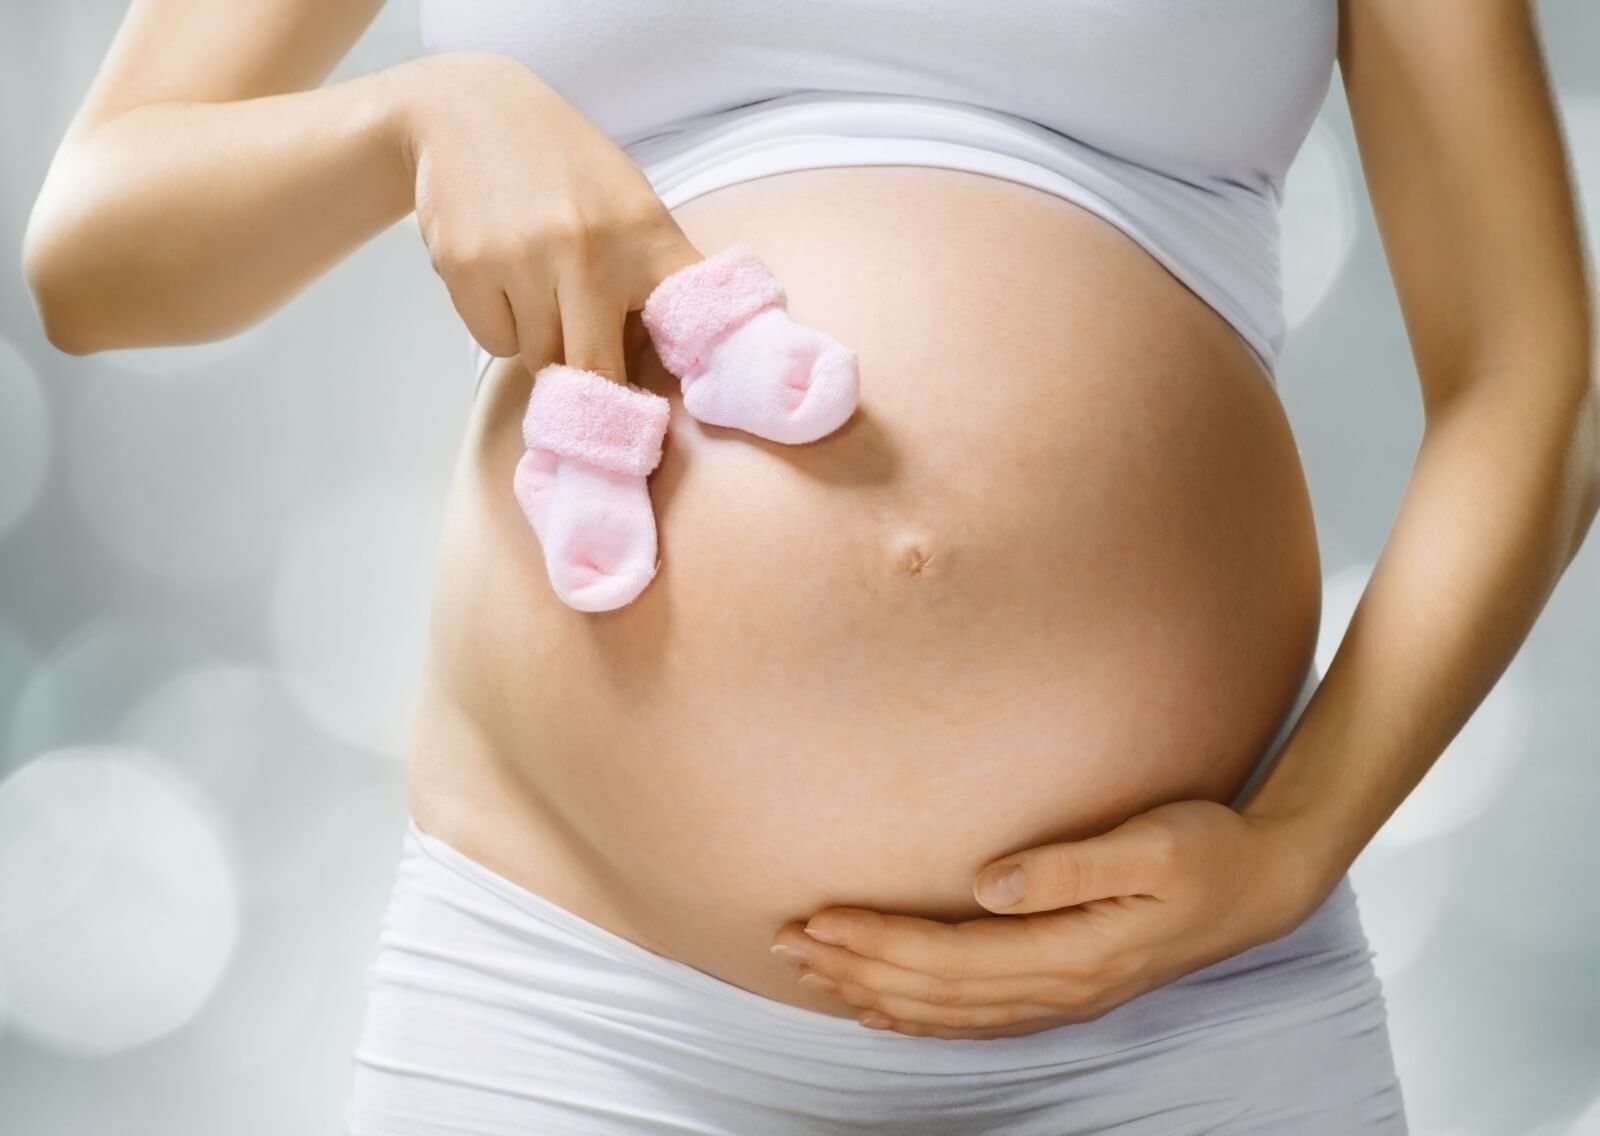 В памяти на всю жизнь: 10 трогательных моментов беременности